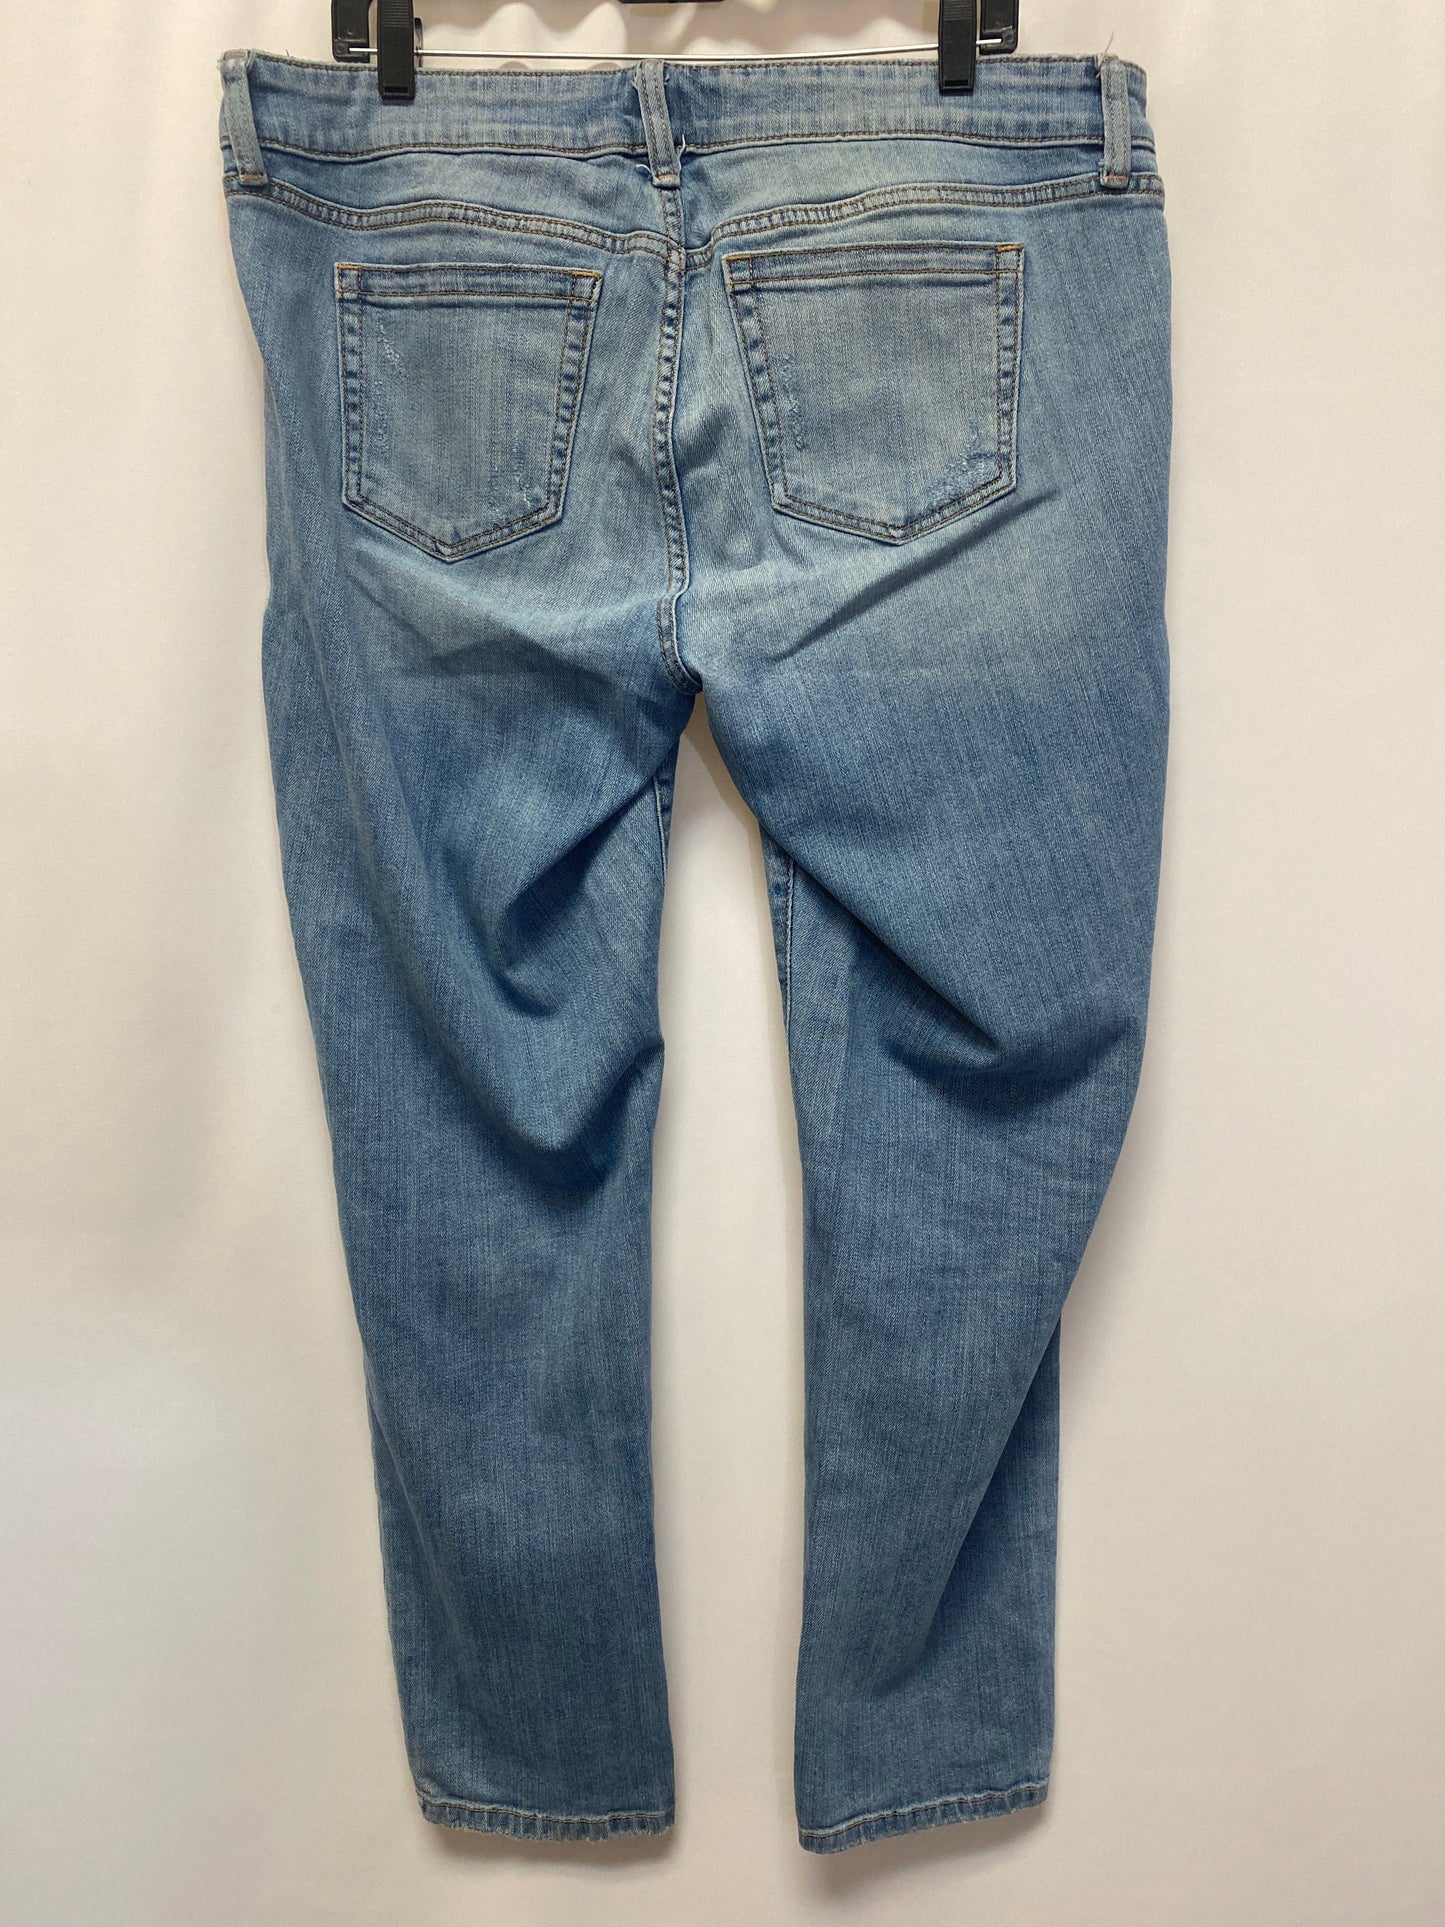 Jeans Boyfriend By Torrid  Size: 14